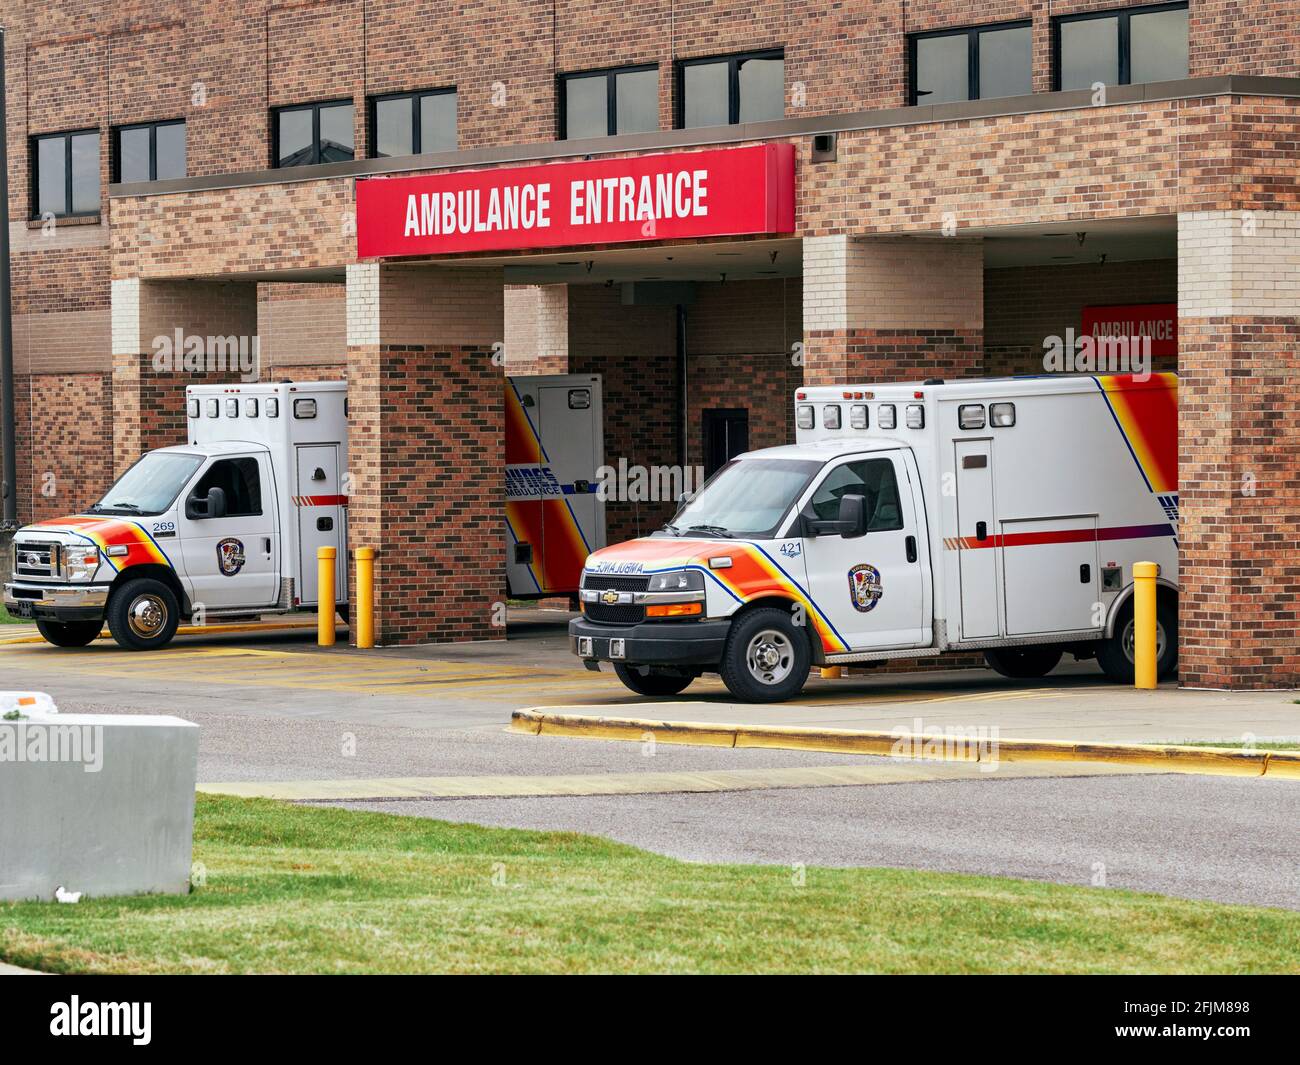 Hospital exterior emergency ambulance entrance, Montgomery Alabama USA. Stock Photo